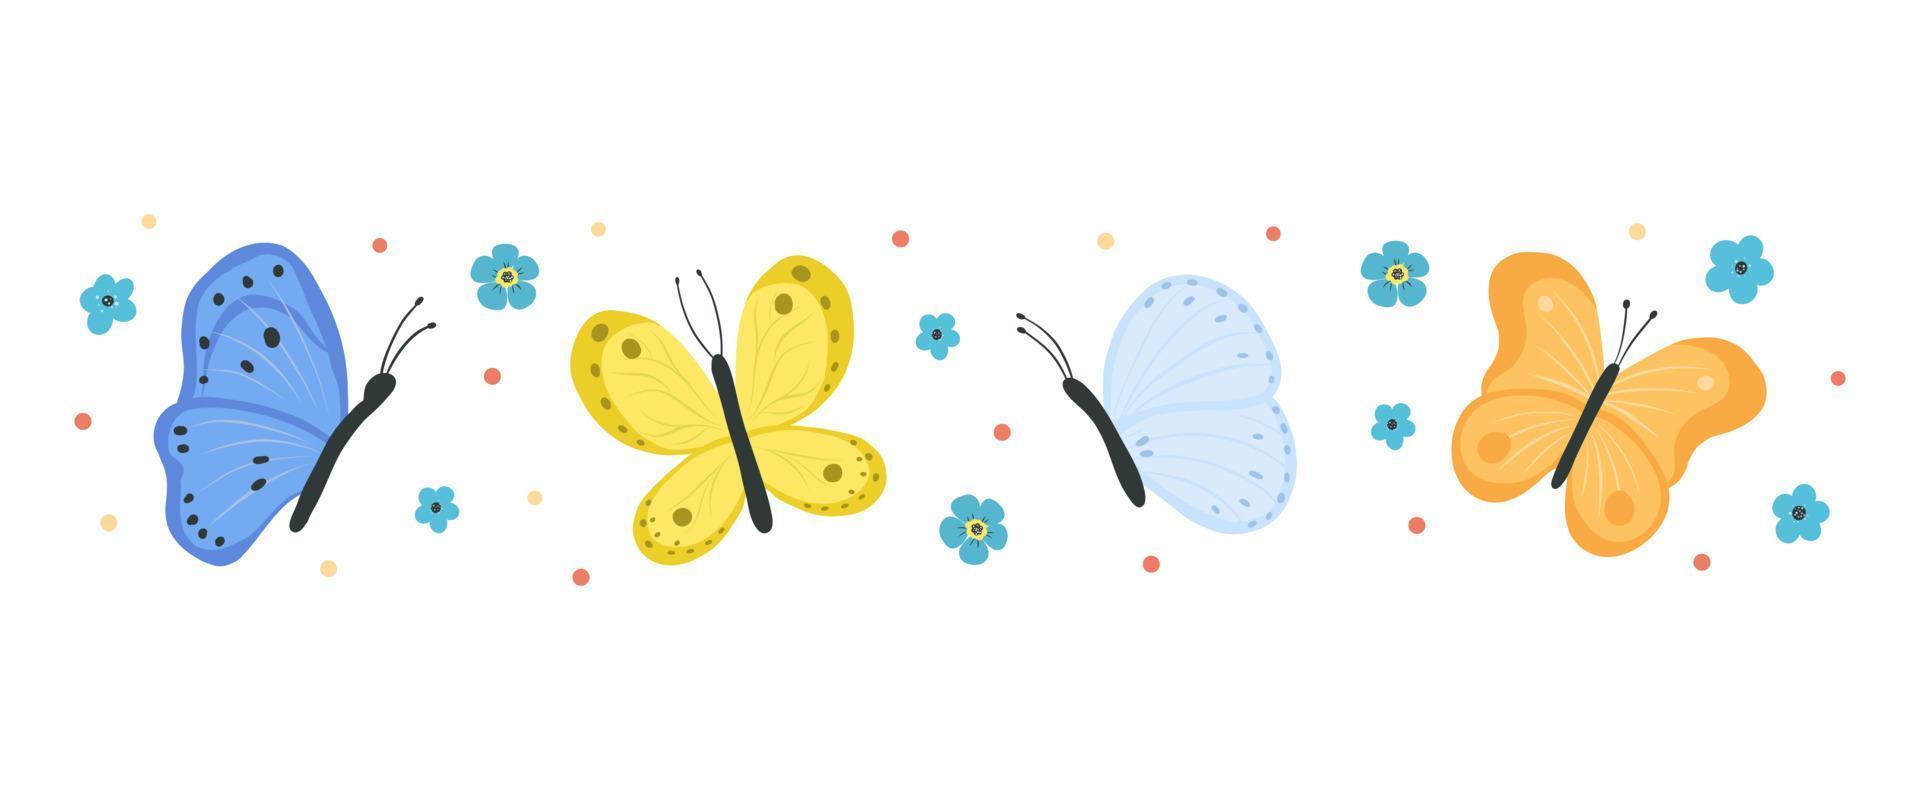 Sammlung von Schmetterlingen und Motten isoliert auf weißem Hintergrund. Reihe von fliegenden Insekten mit bunten Flügeln. bündel dekorativer gestaltungselemente. flache vektorillustration. vektor